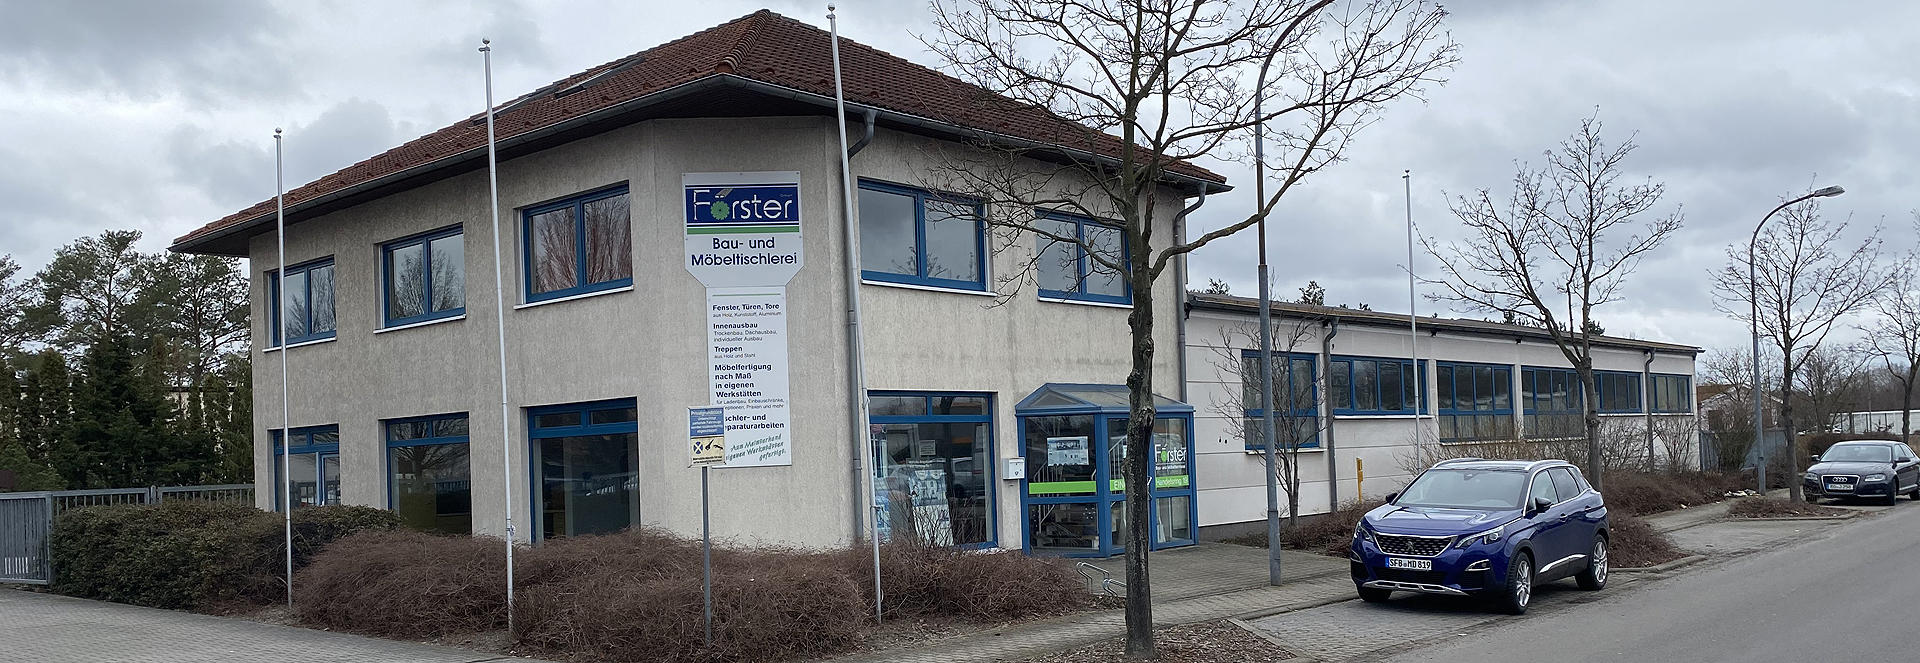 Bau- und Möbeltischlerei Förster GmbH aus Schwarzheide